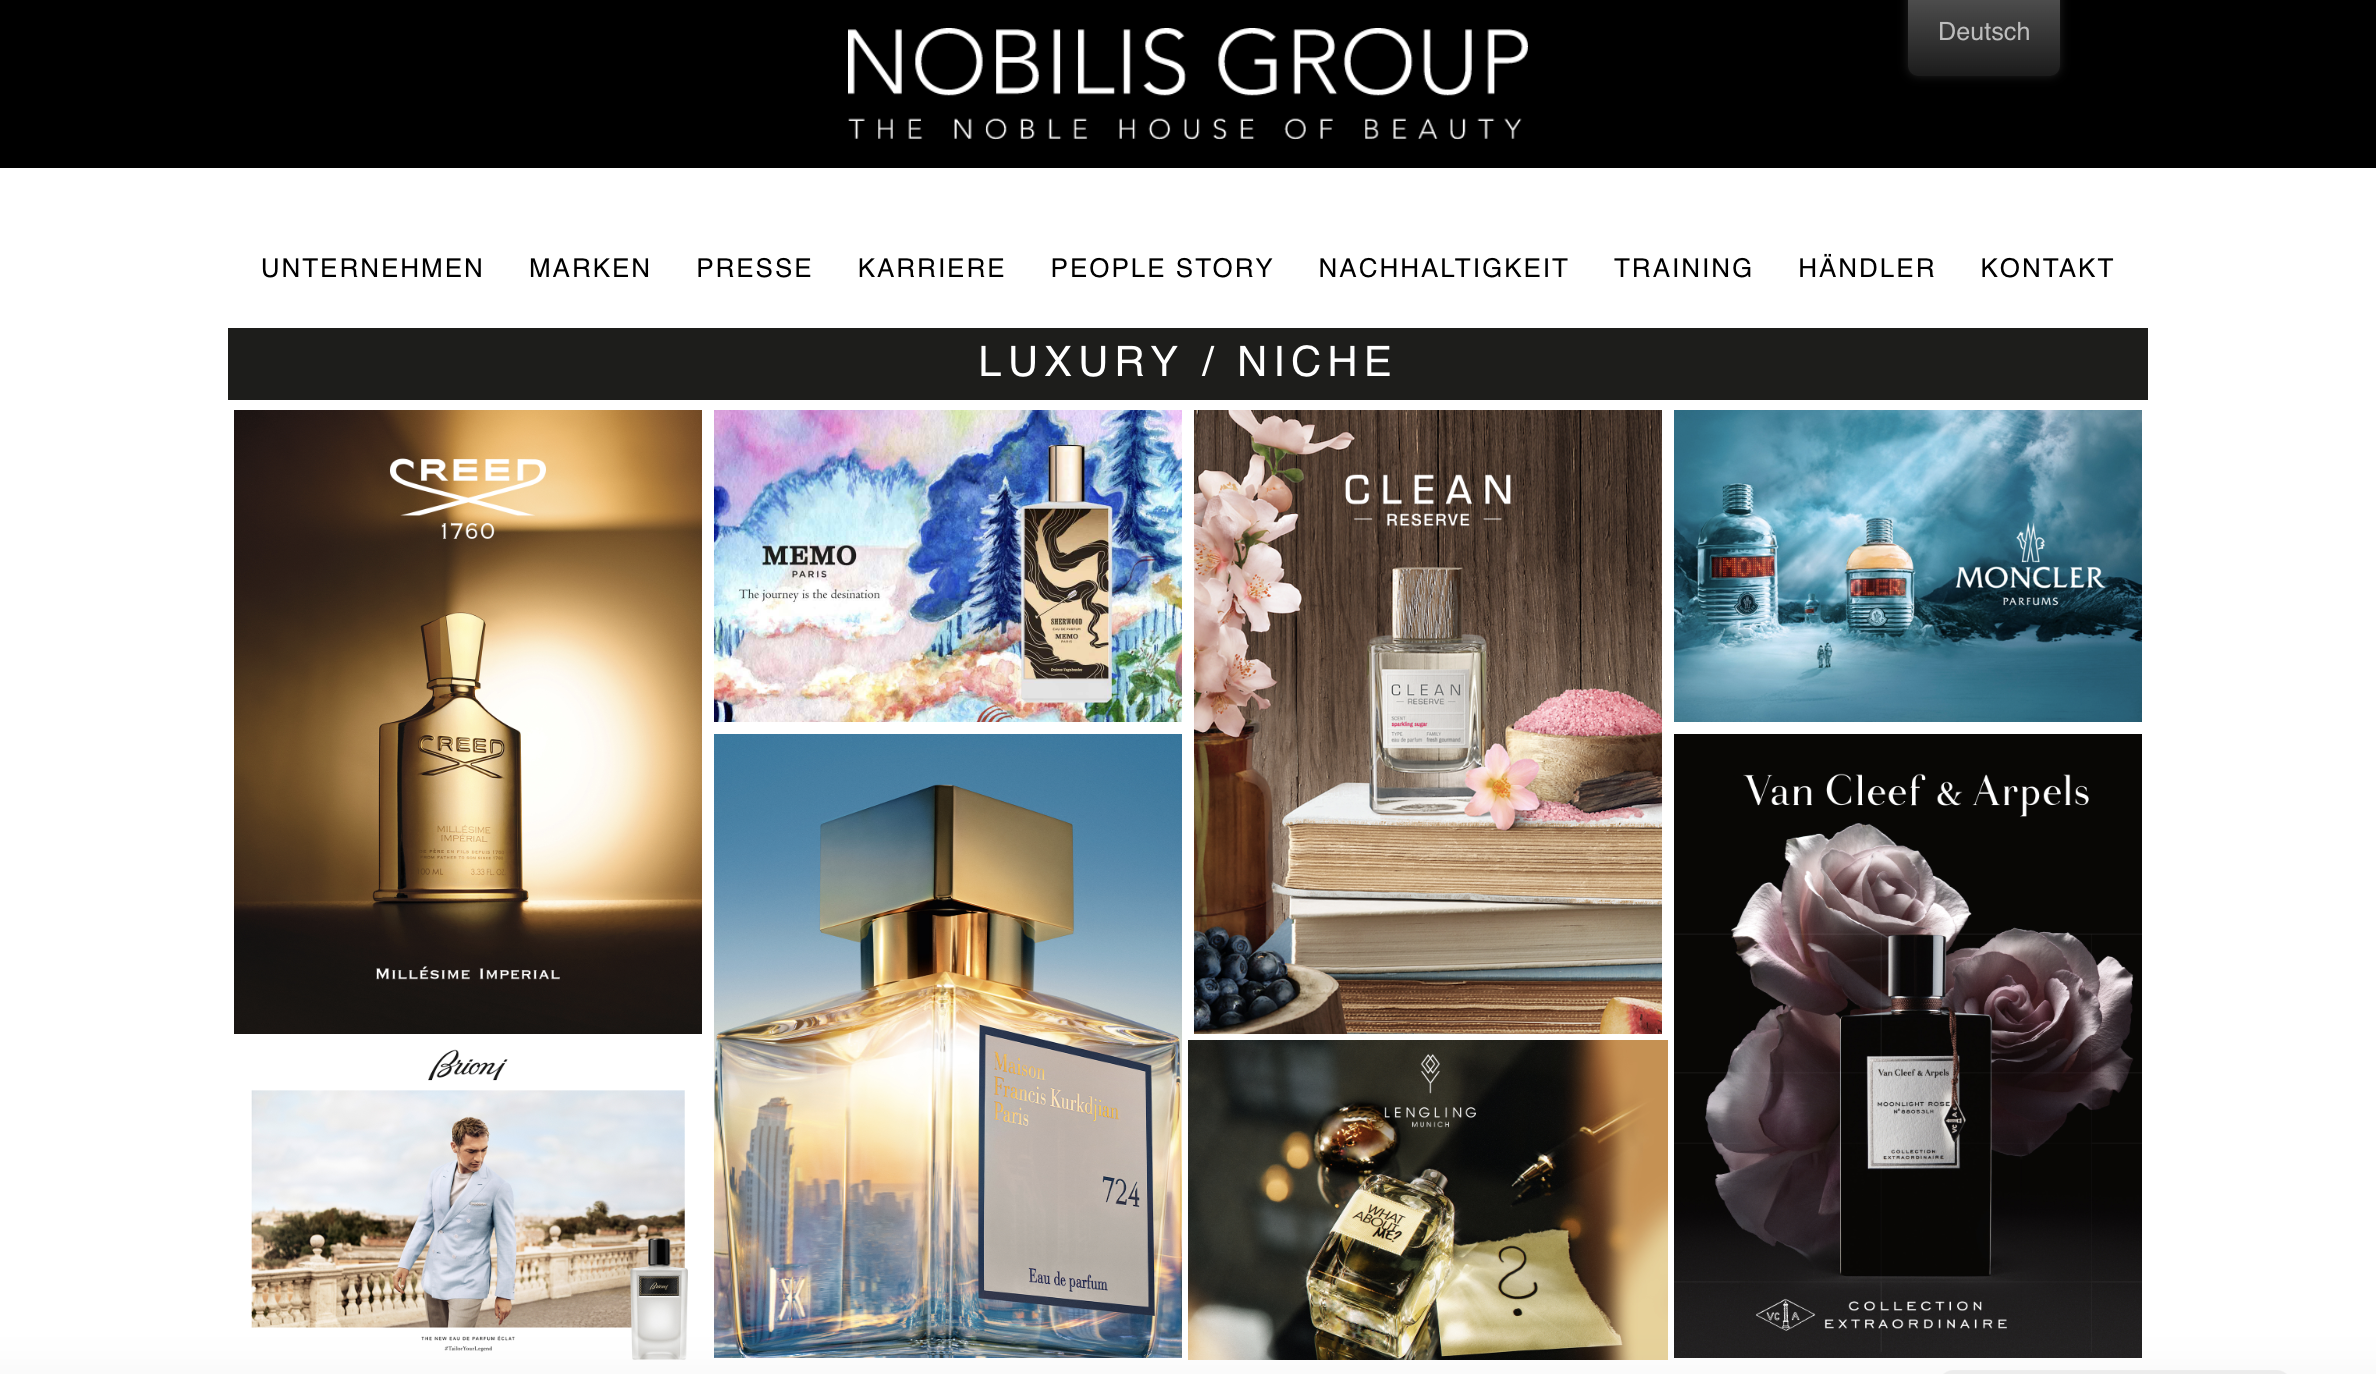 德语区高端香水分销商 Nobilis Group 50%股份被国际旅游零售商 Gebr. Heinemann 收购